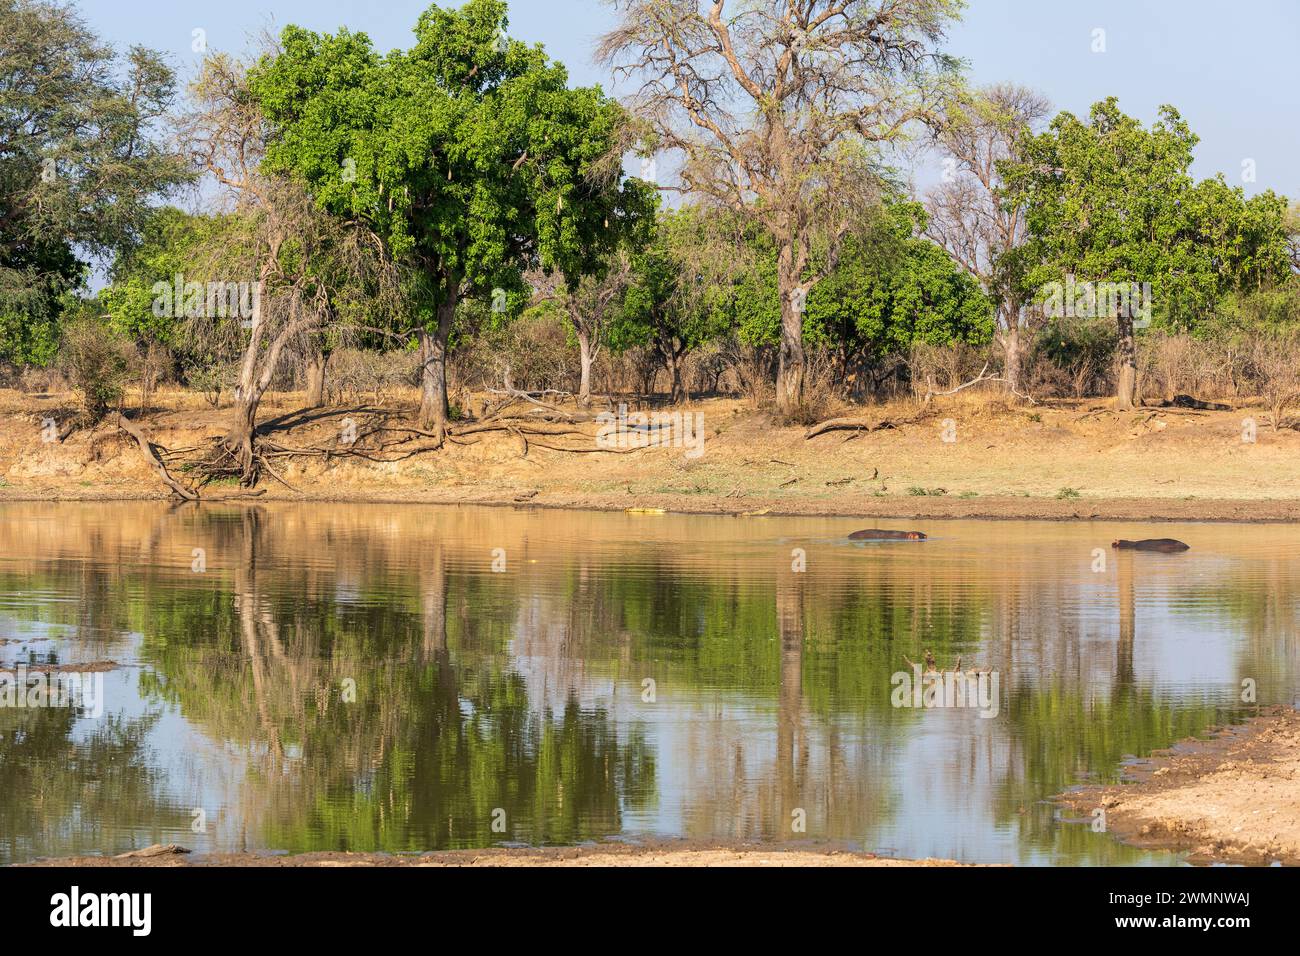 Paysage typique de savane boisée (avec des hippopotames) dans la vallée de la rivière Luangwa dans le parc national de South Luangwa en Zambie, Afrique australe Banque D'Images